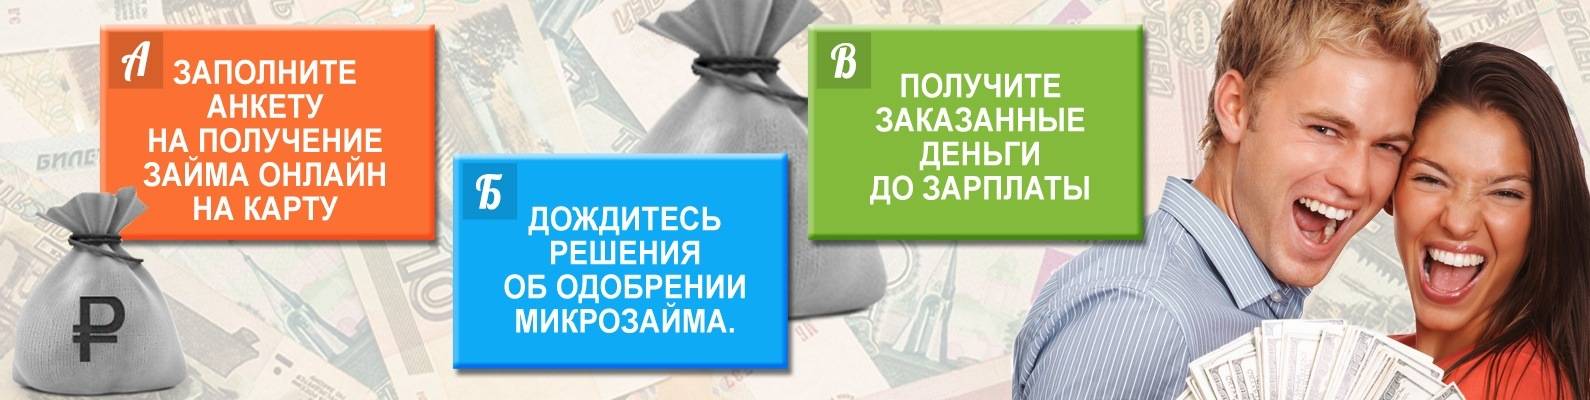 Кредит в московском кредитном банке с доставкой на дом, взять кредит наличными по паспорту с доставкой